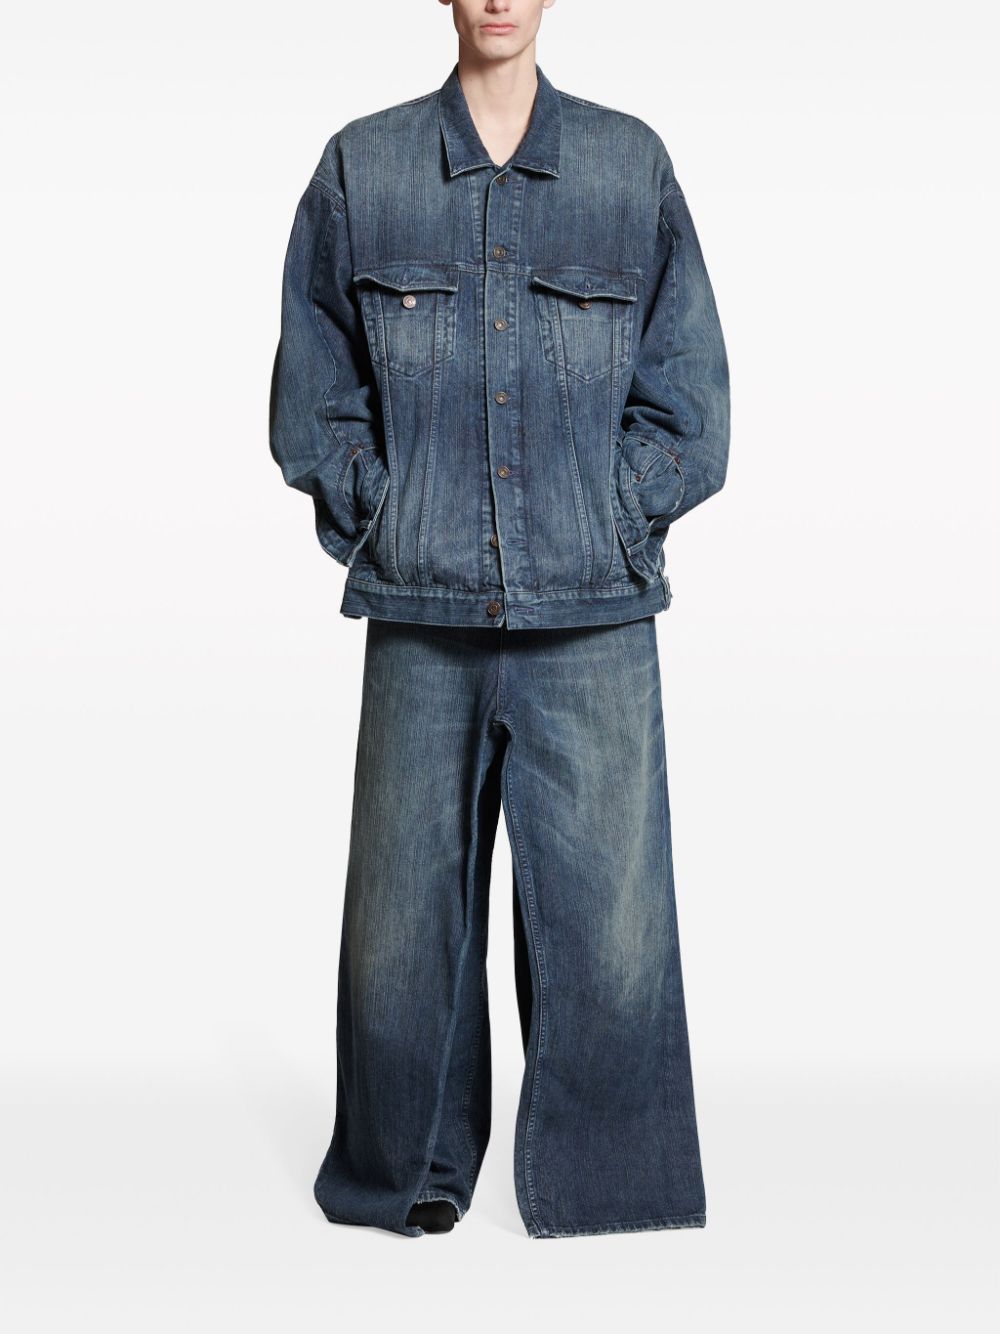 經典釦扣設計帶前袋的藍色寬鬆牛仔外套